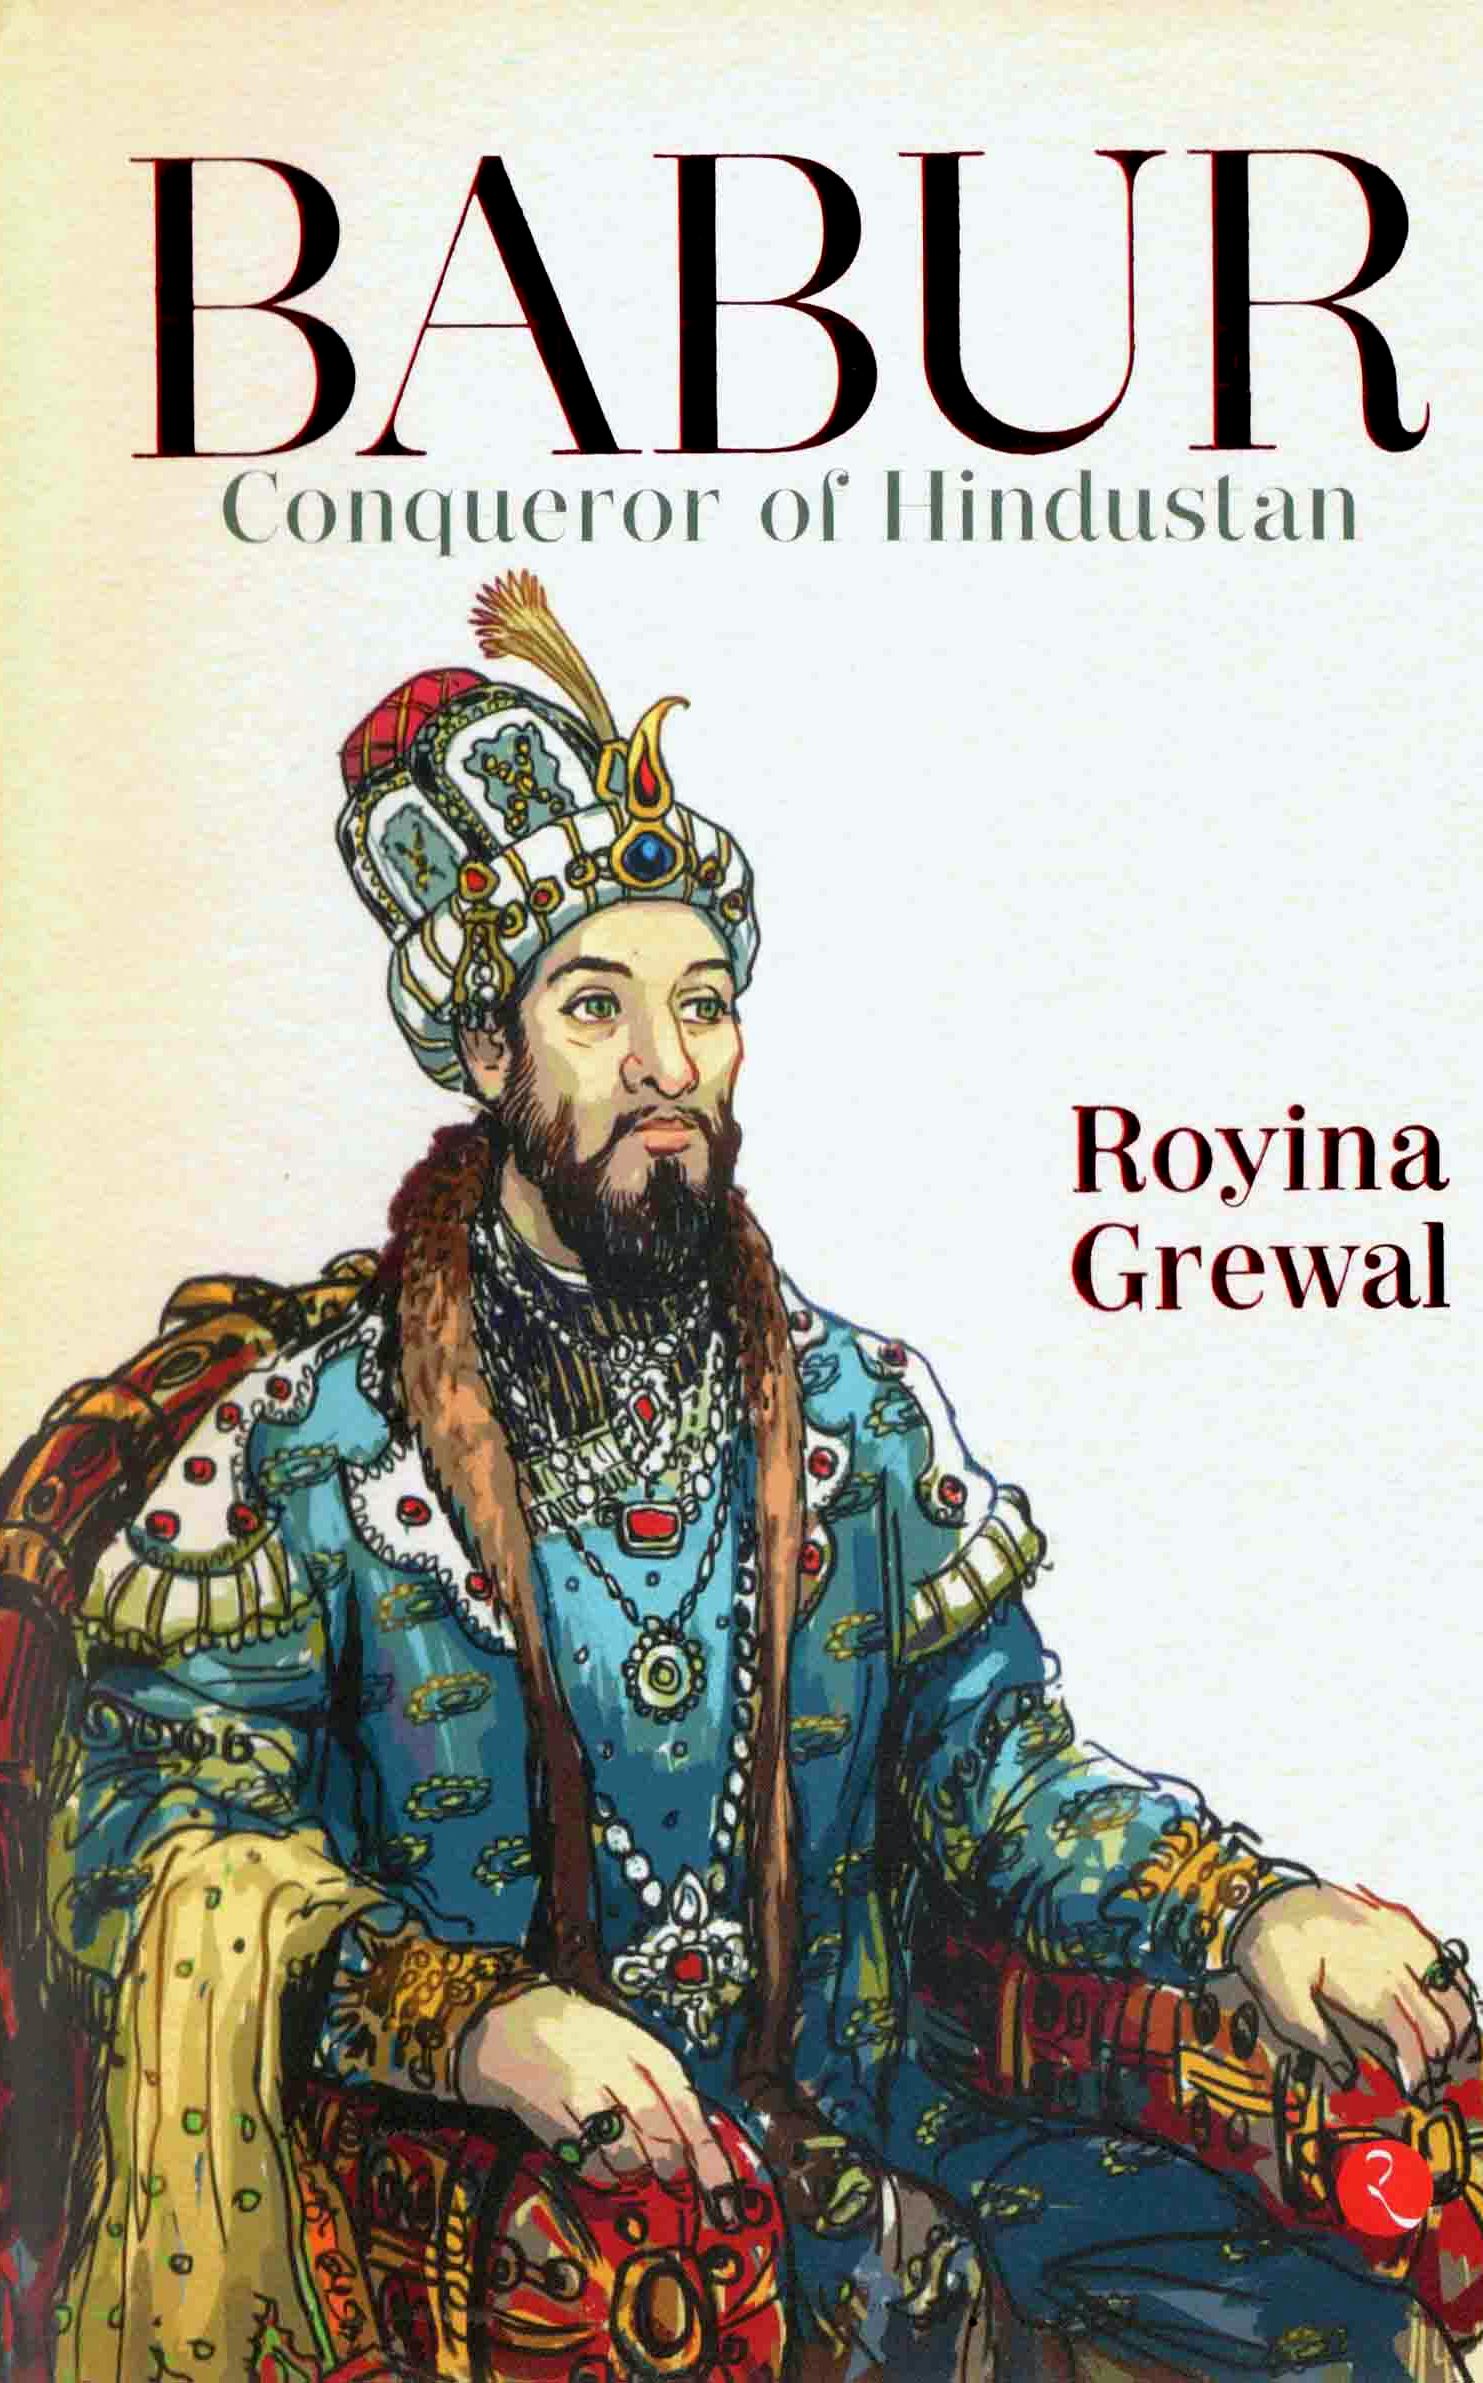 Babur conqueror of Hindustan